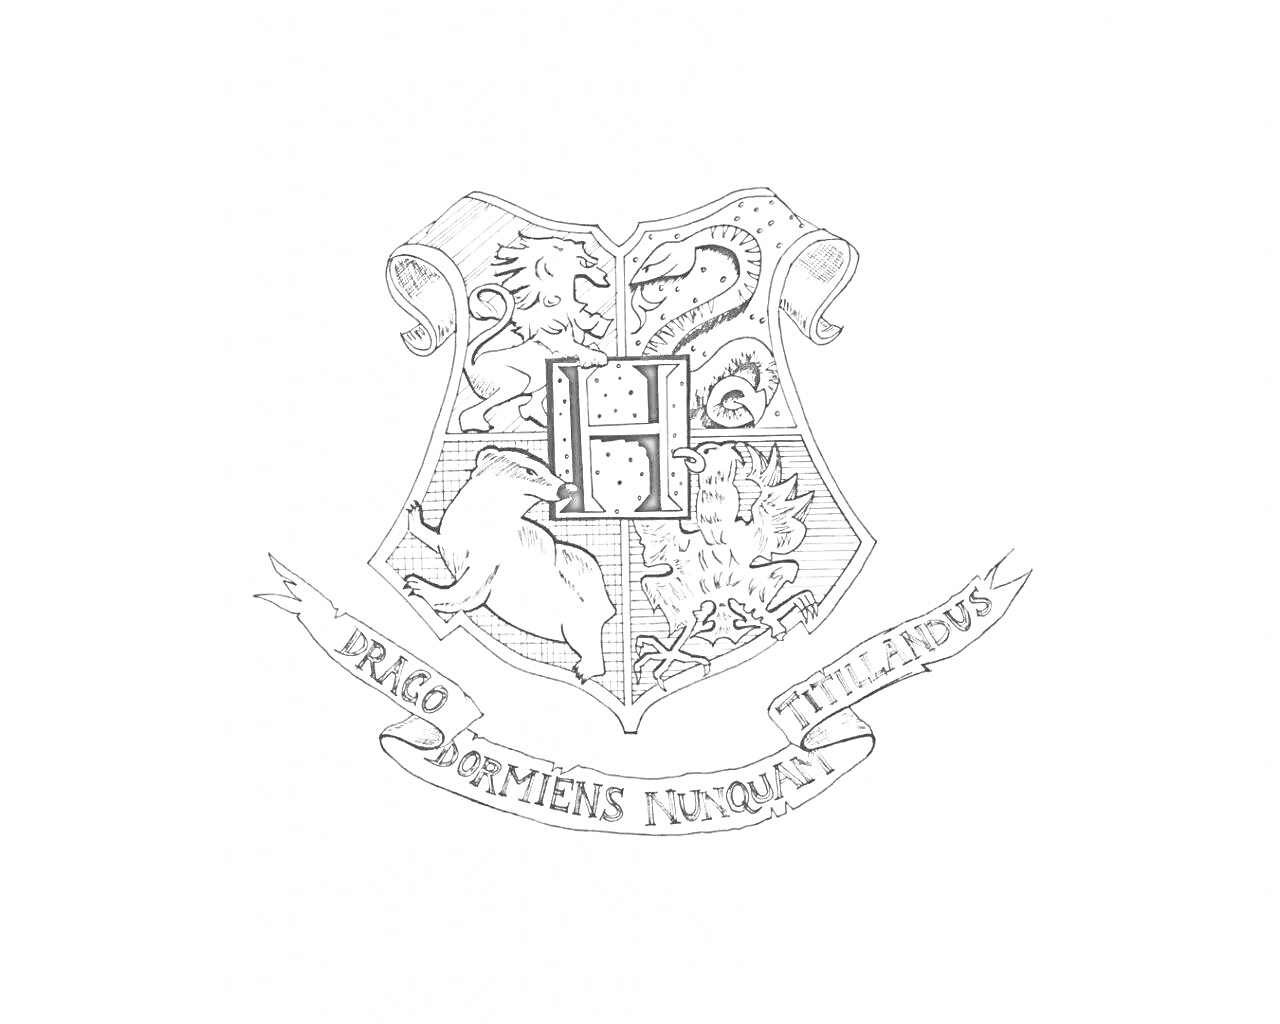 Раскраска Герб Хогвартса с изображением лева, змеи, барсука и орла, в центре буква 